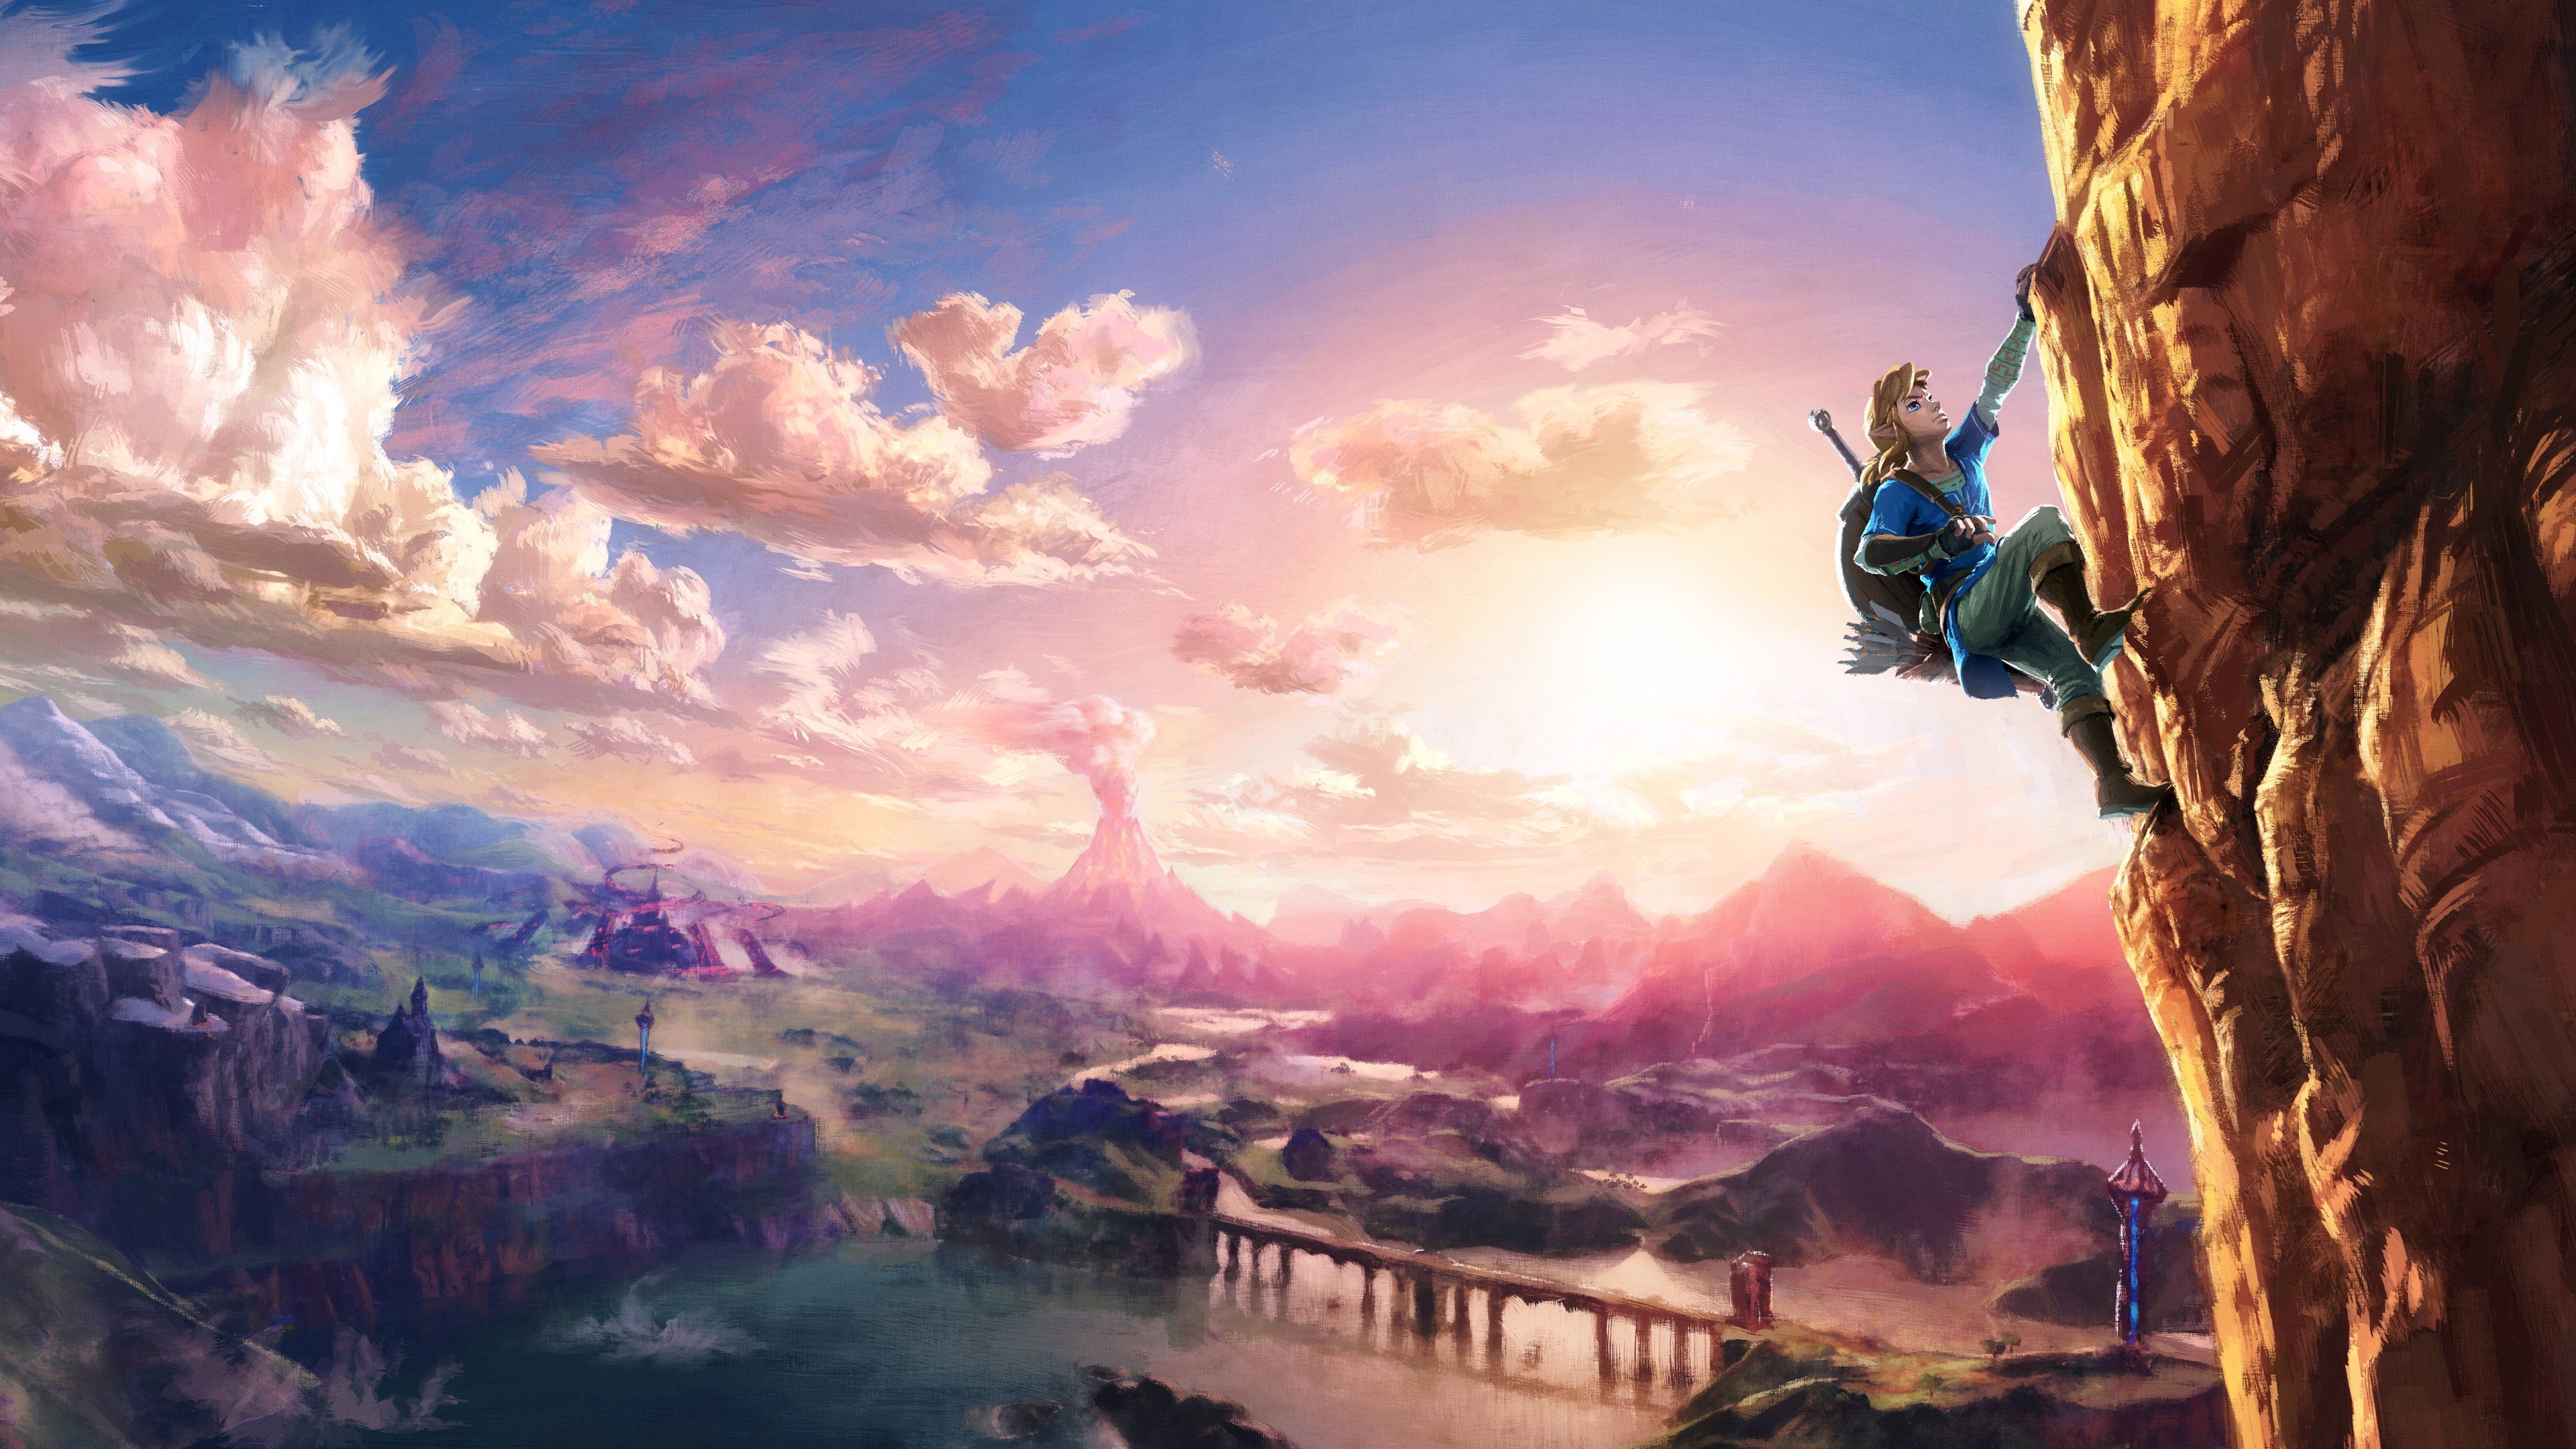 Link, The Legend of Zelda, Wii U, Nintendo, Nintendo NX, Rock climbing, Heights, The Legend of Zelda: Breath of the Wild Wallpaper